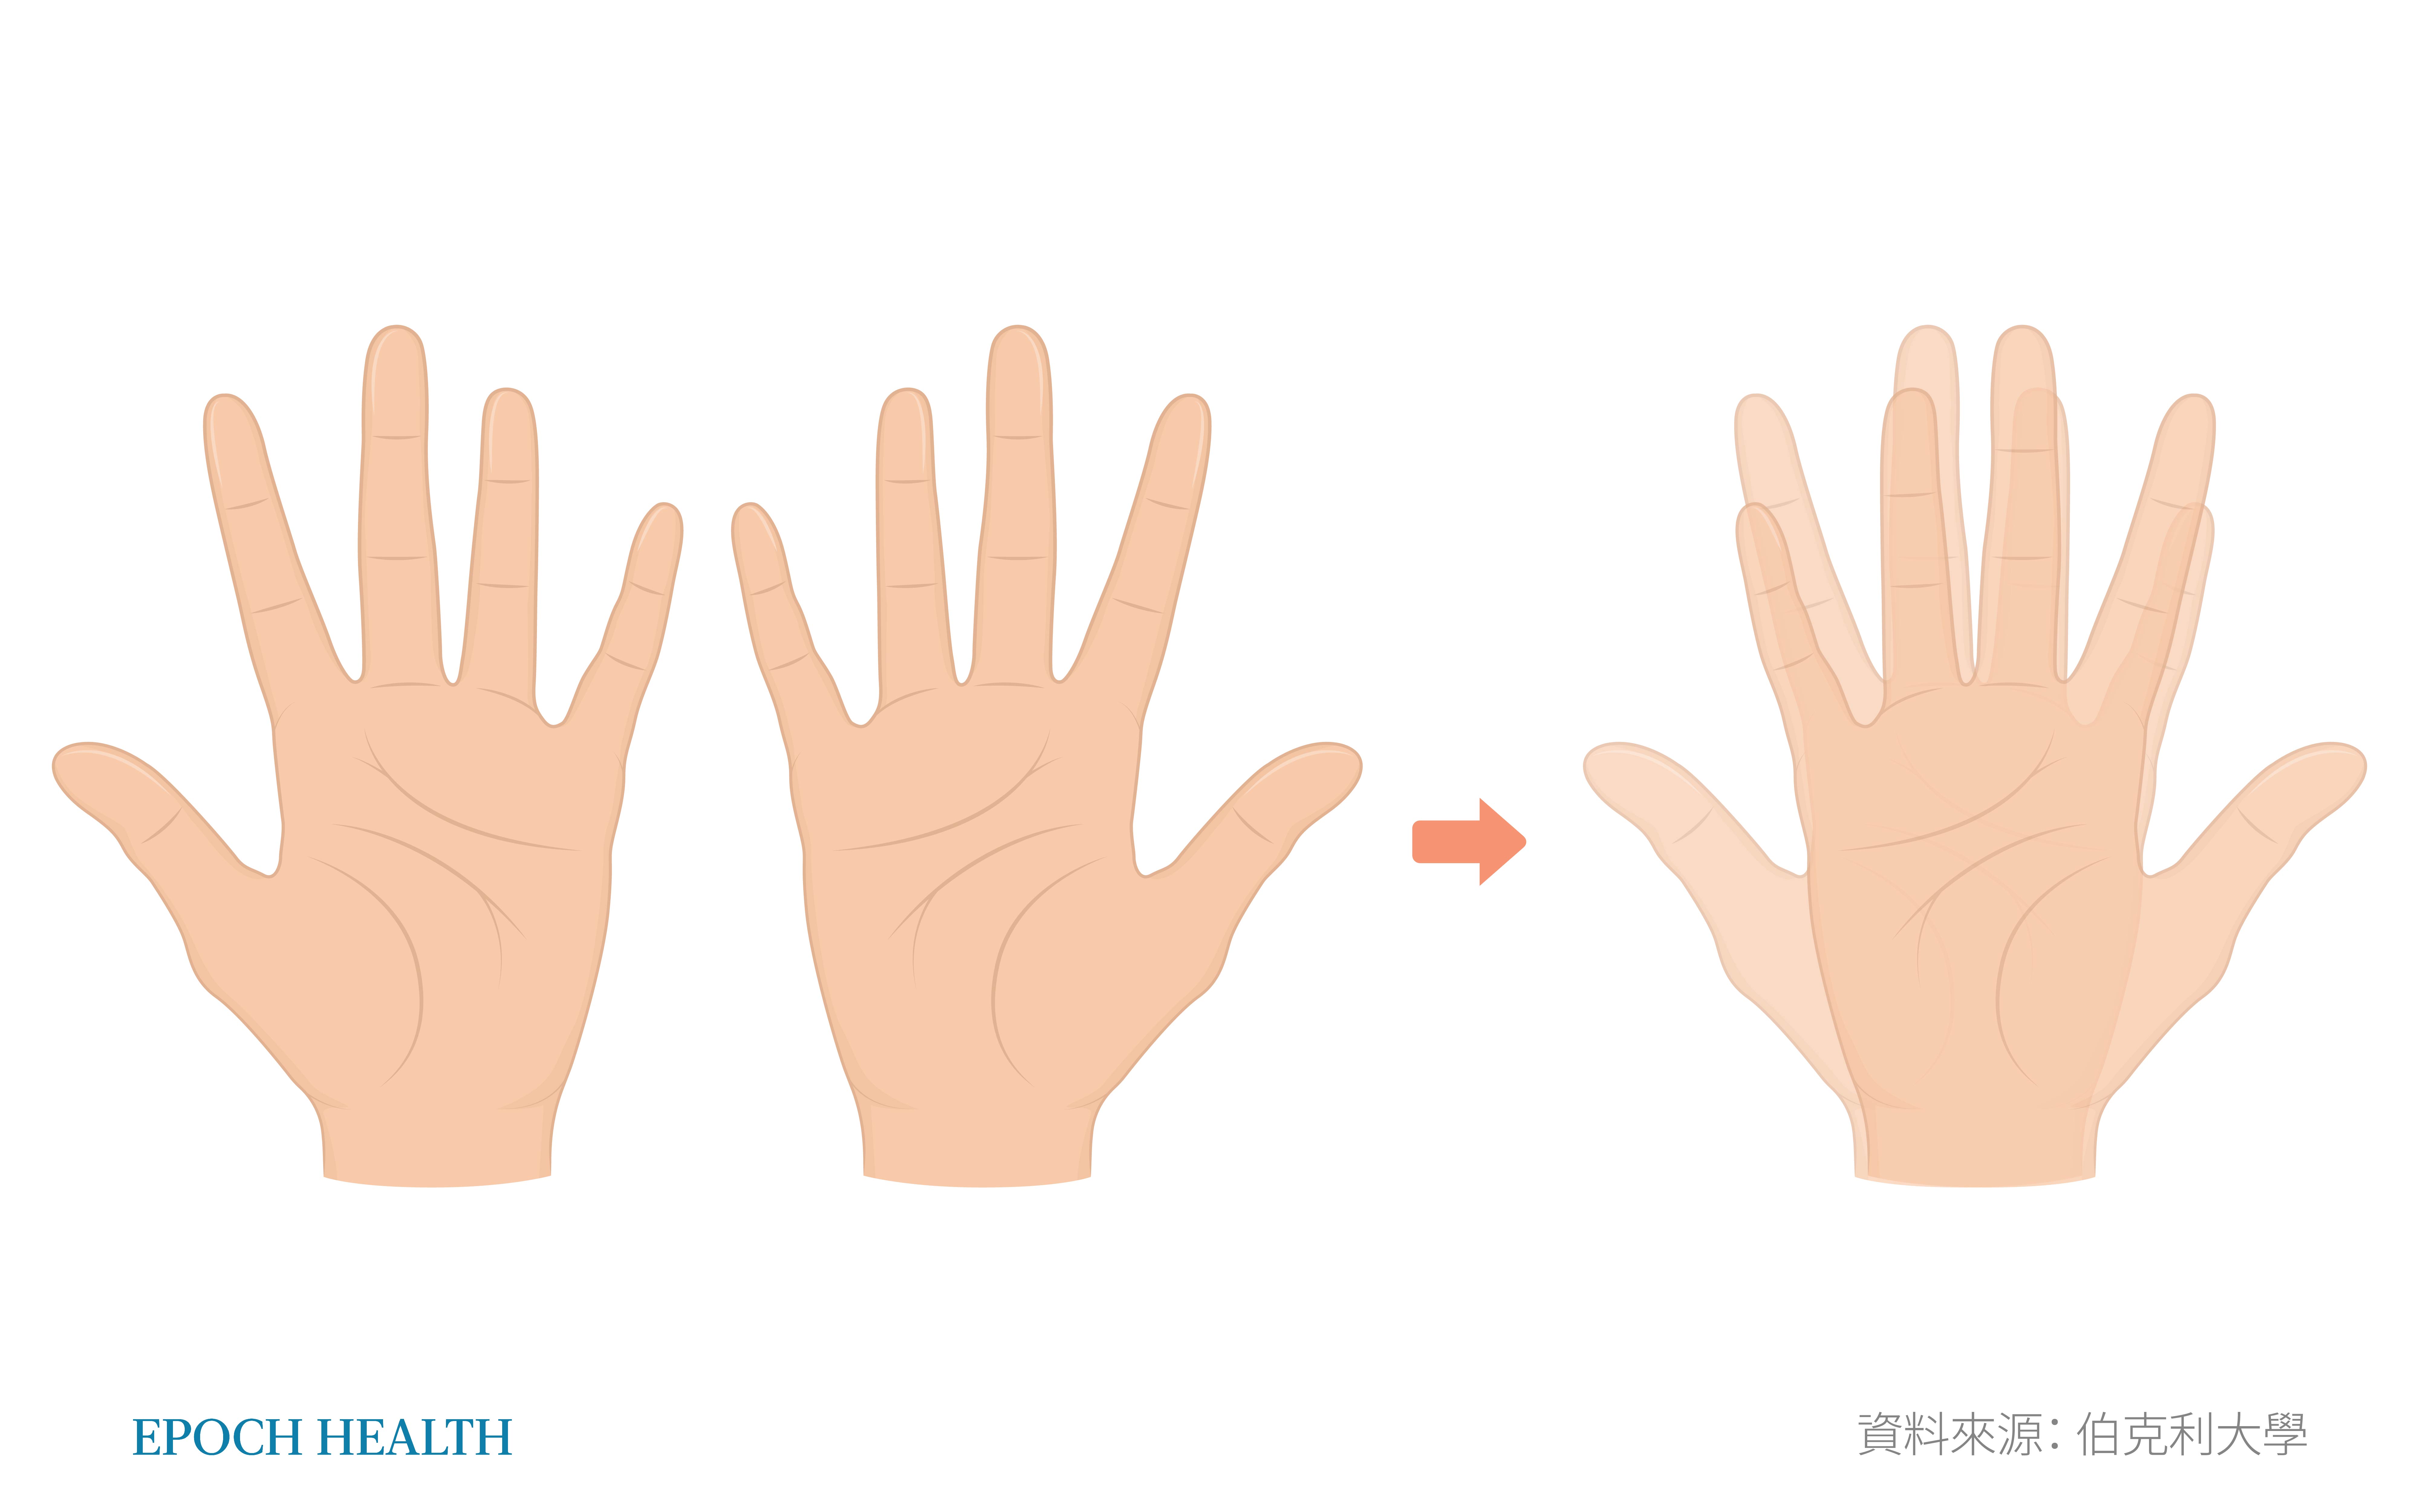 Con người có tay trái và tay phải, nhìn có vẻ giống nhau, nhưng cấu trúc ba chiều lại không thể trùng hợp. (Ảnh: Epoch Times)